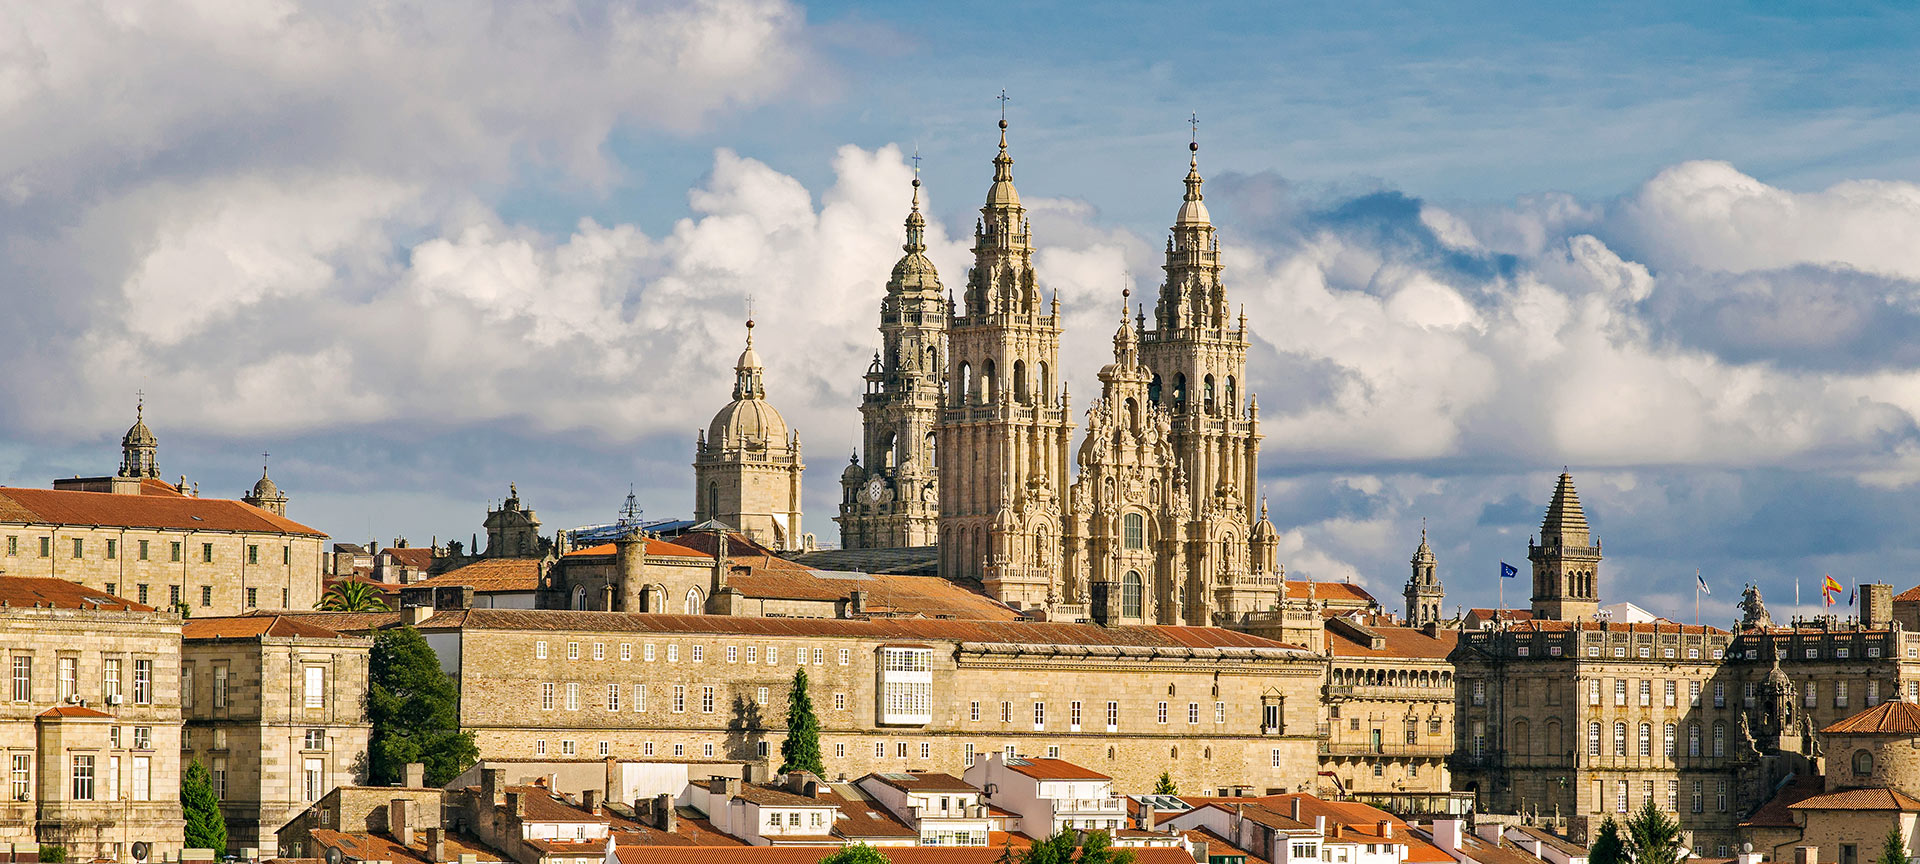 Santiago de Compostela Cathedral (A Coruña)